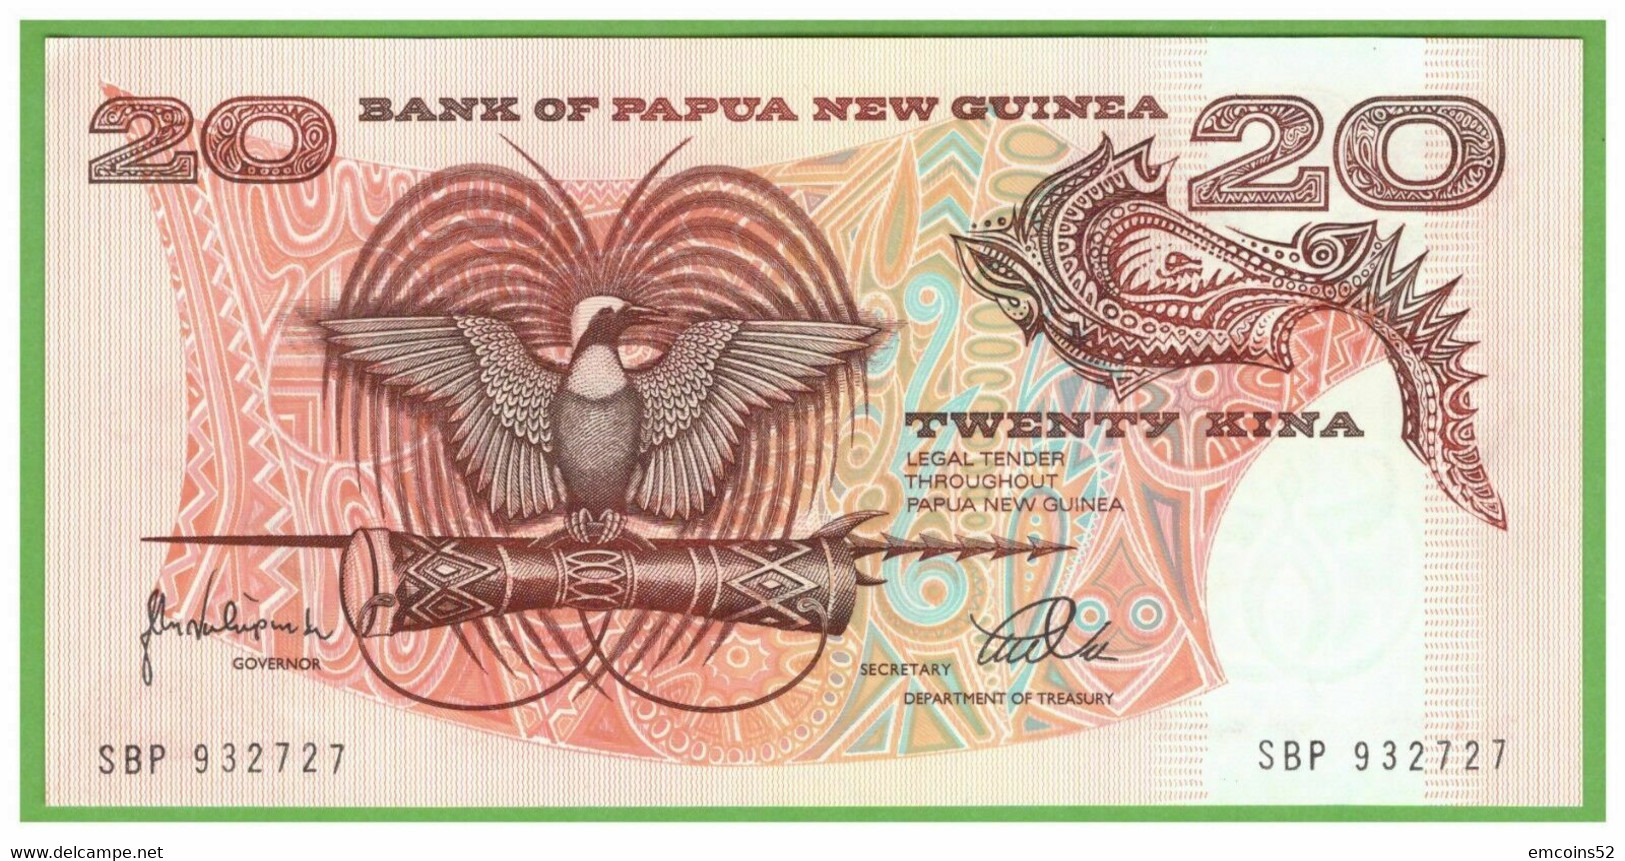 PAPUA NEW GUINEA 20 DOLLARS 1998  P-10c  UNC - Papouasie-Nouvelle-Guinée